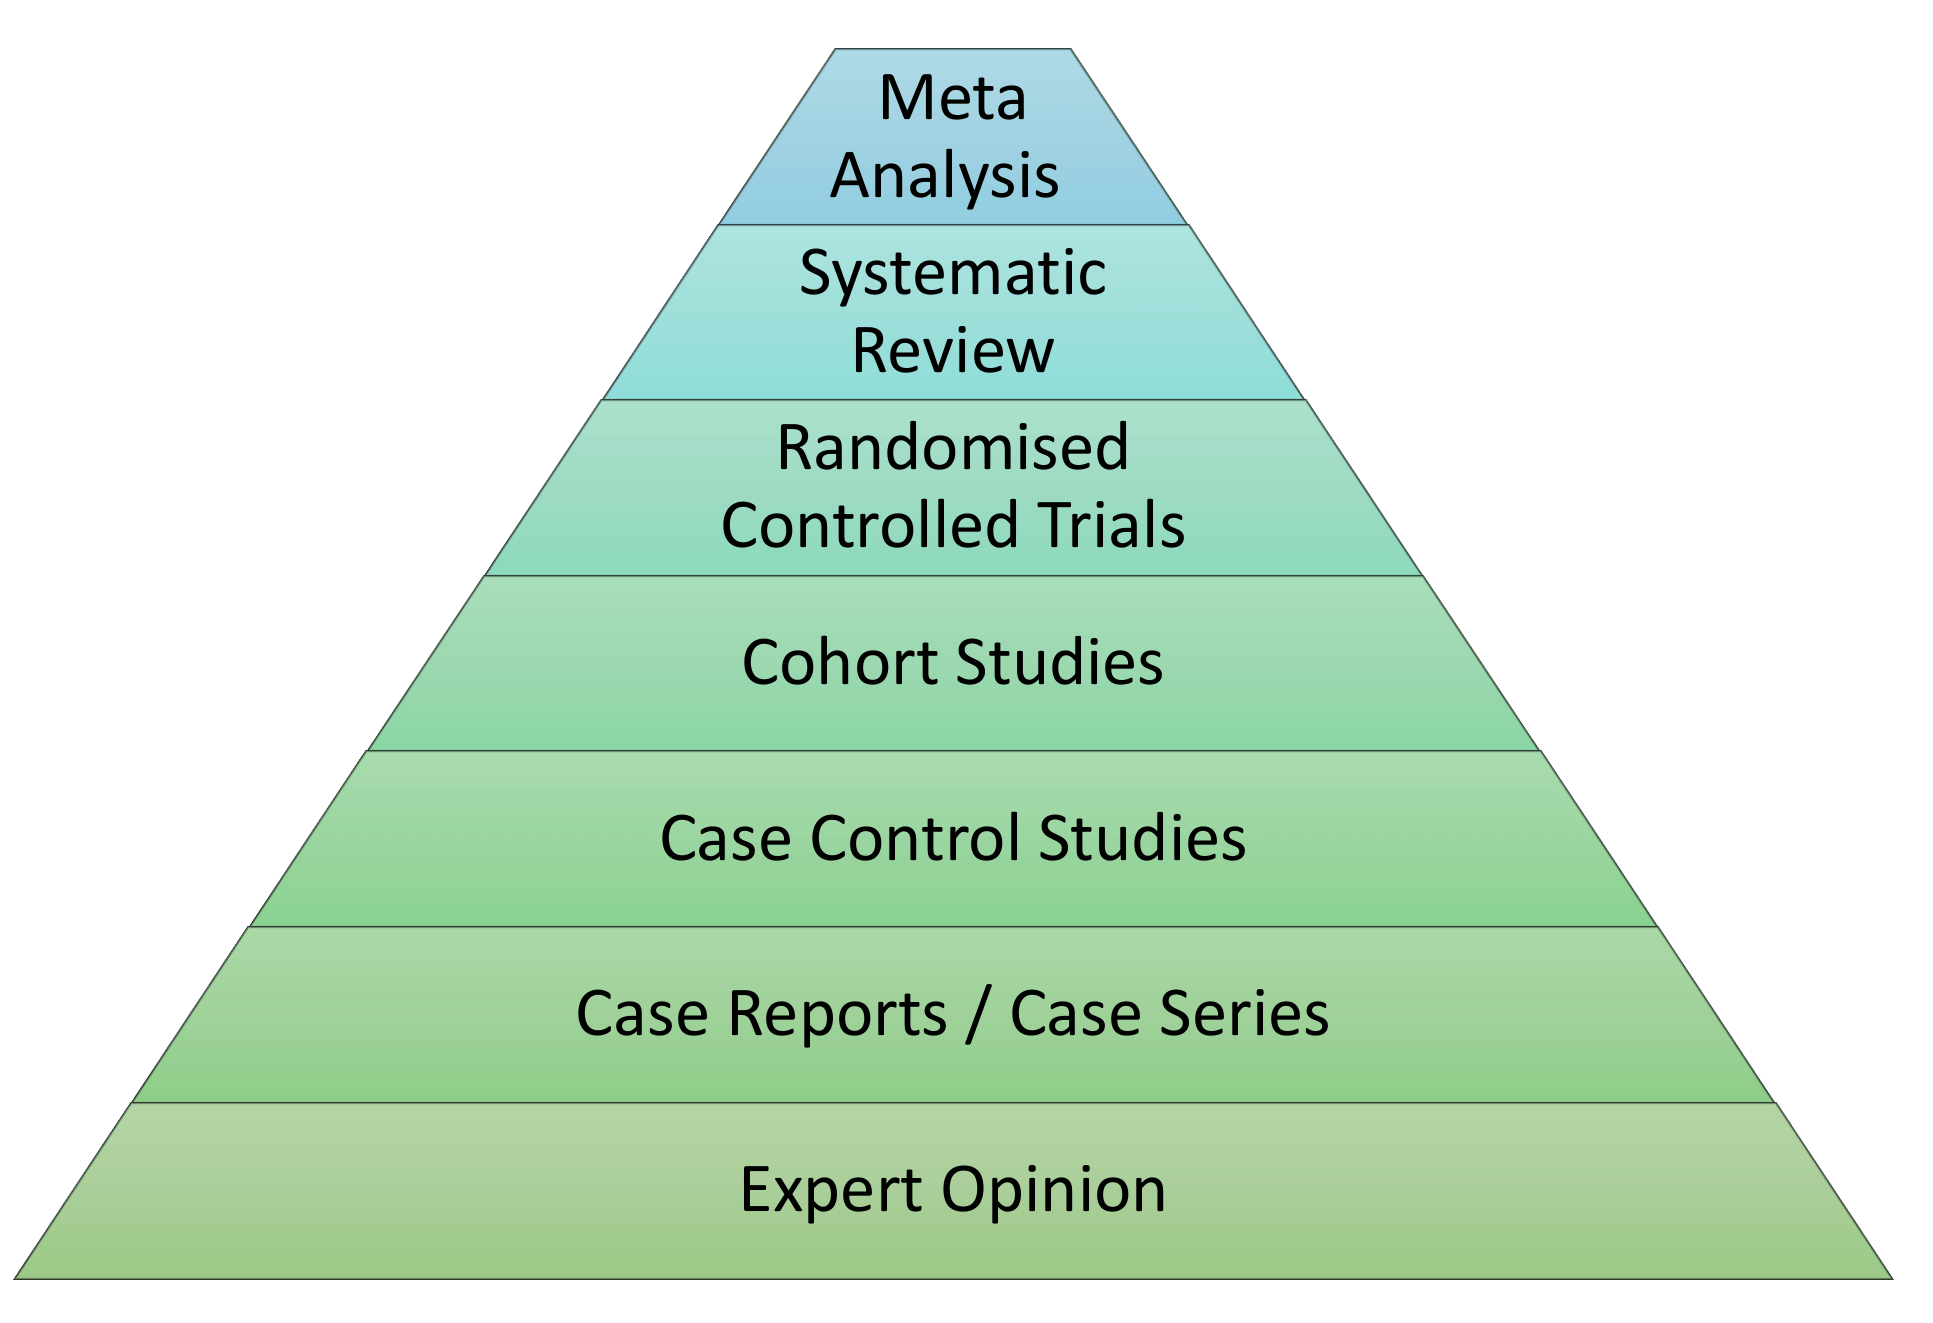 Hierarchy of Study Designs